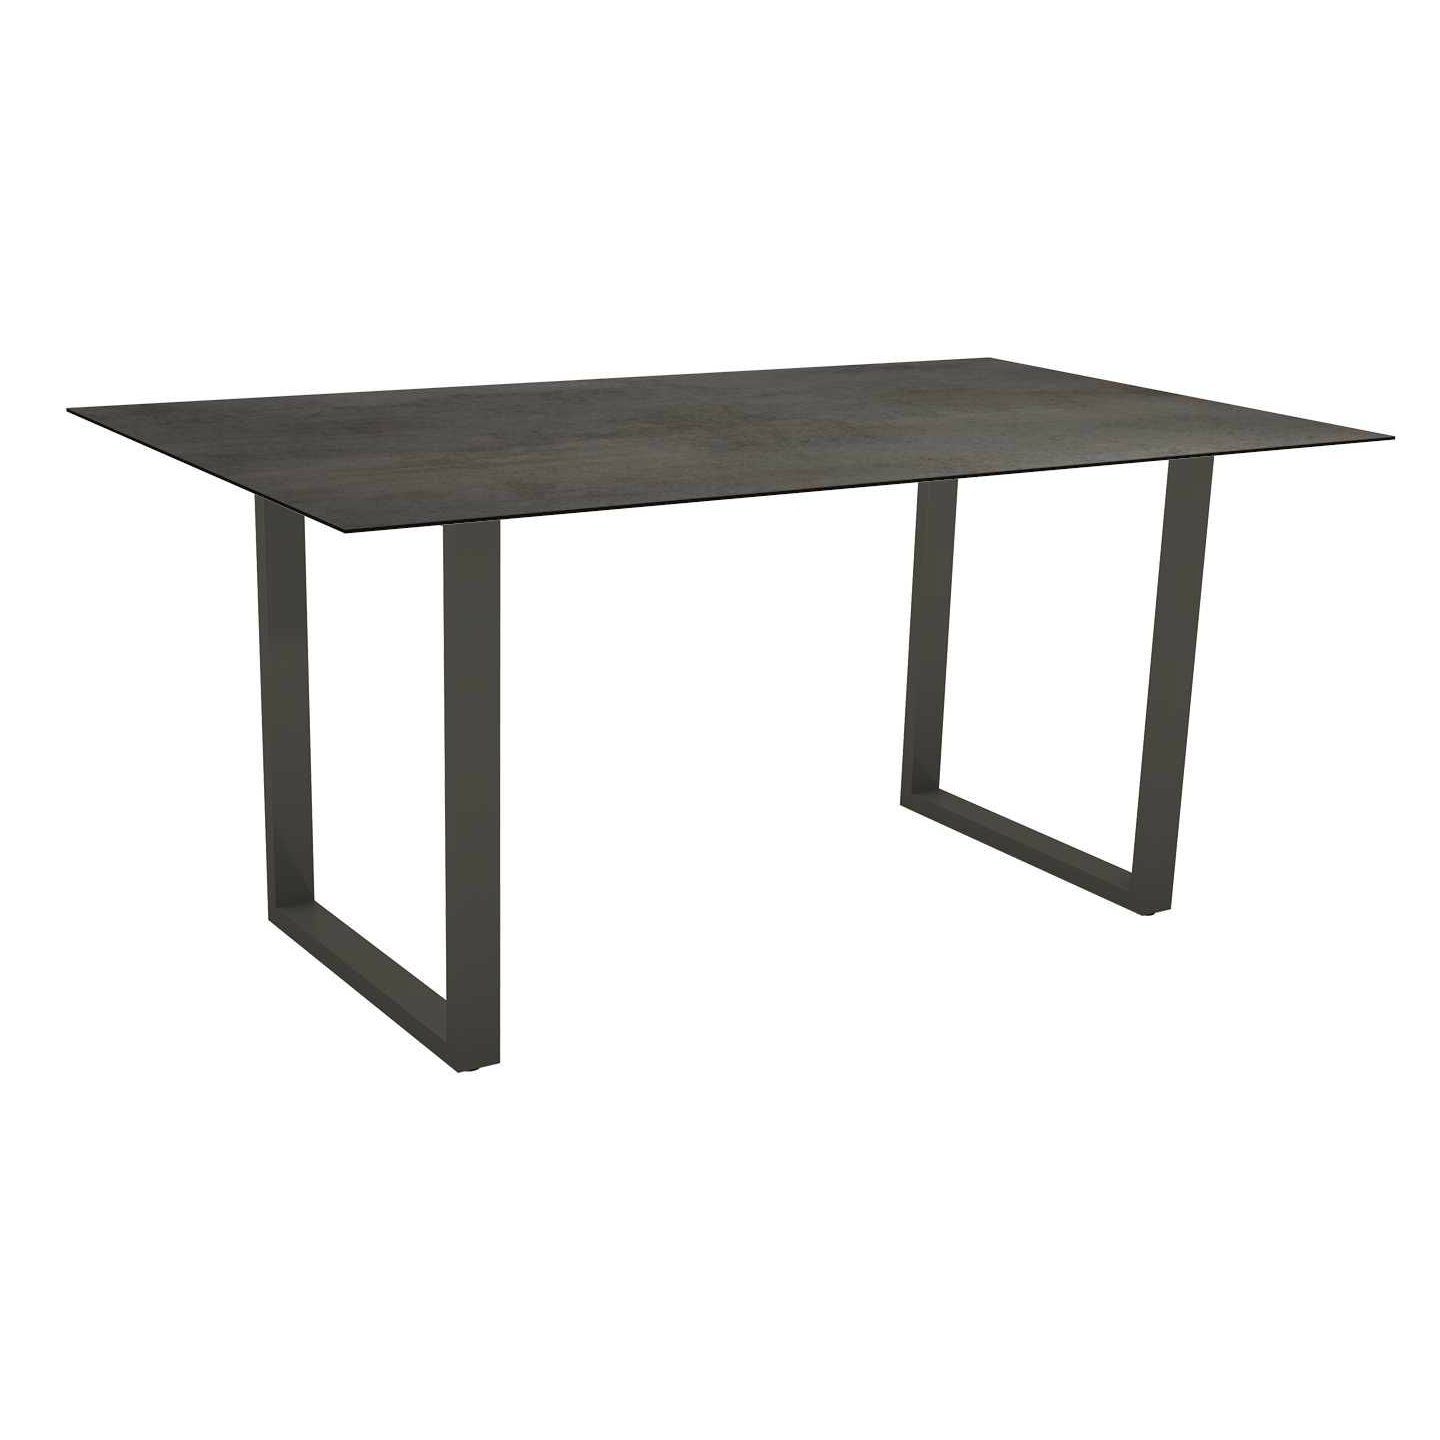 Stern Kufentisch, Gestell Aluminium anthrazit, Tischplatte HPL Nitro, Tischgröße: 160x90 cm